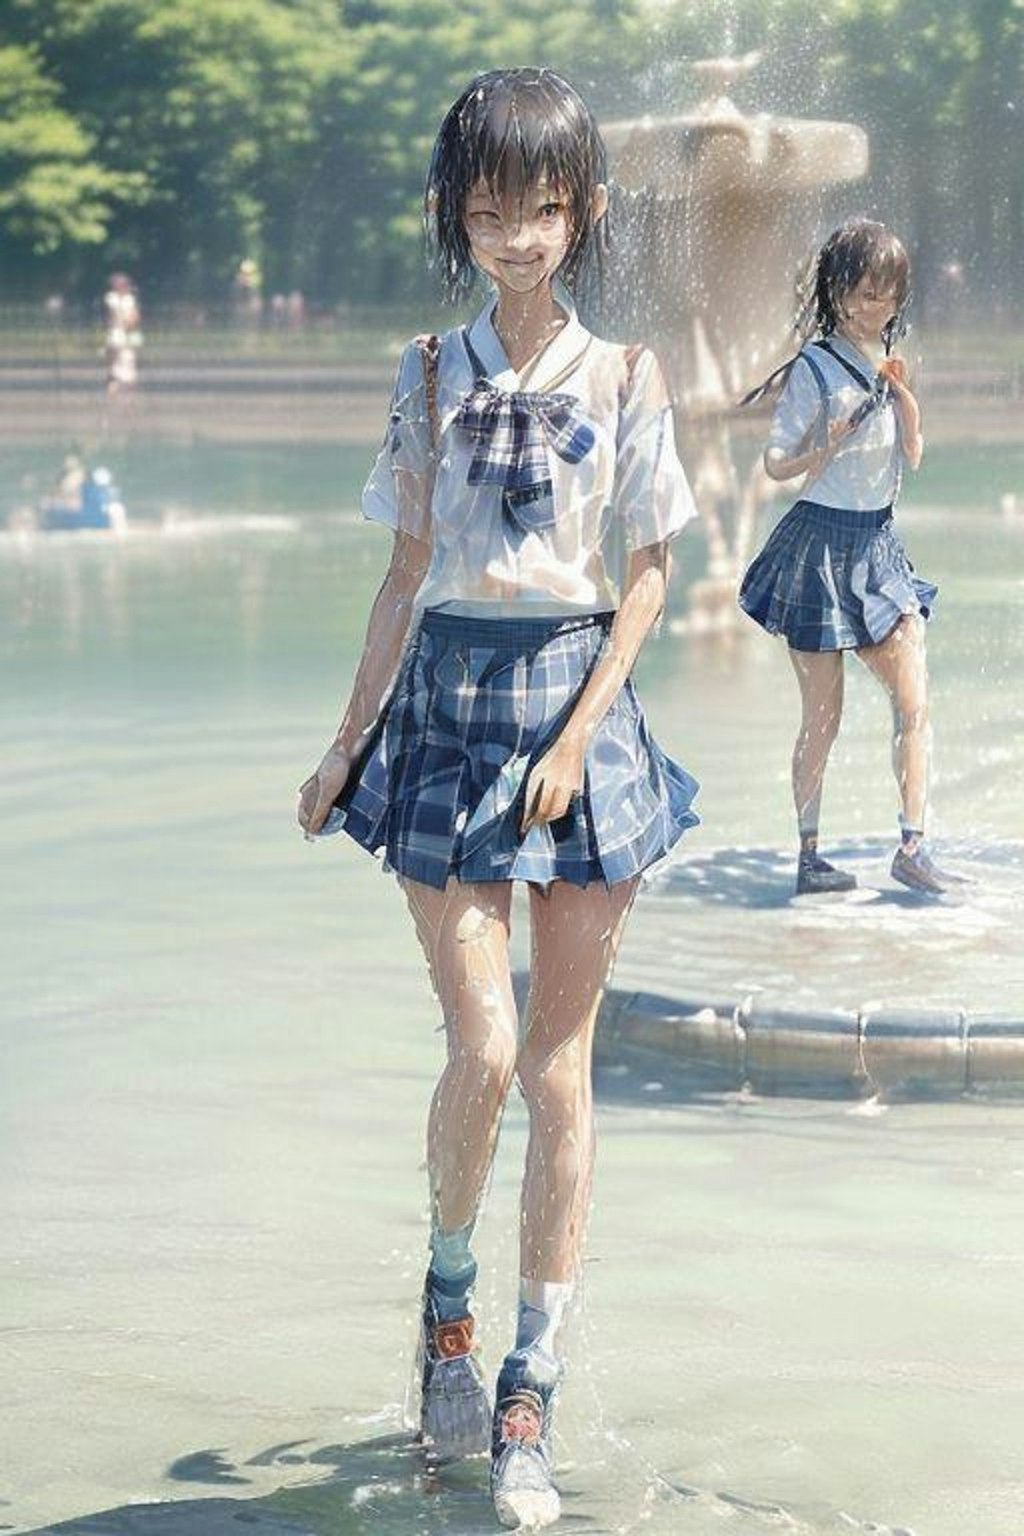 噴水で遊ぶ女子高生スタイル色々詰め合わせ